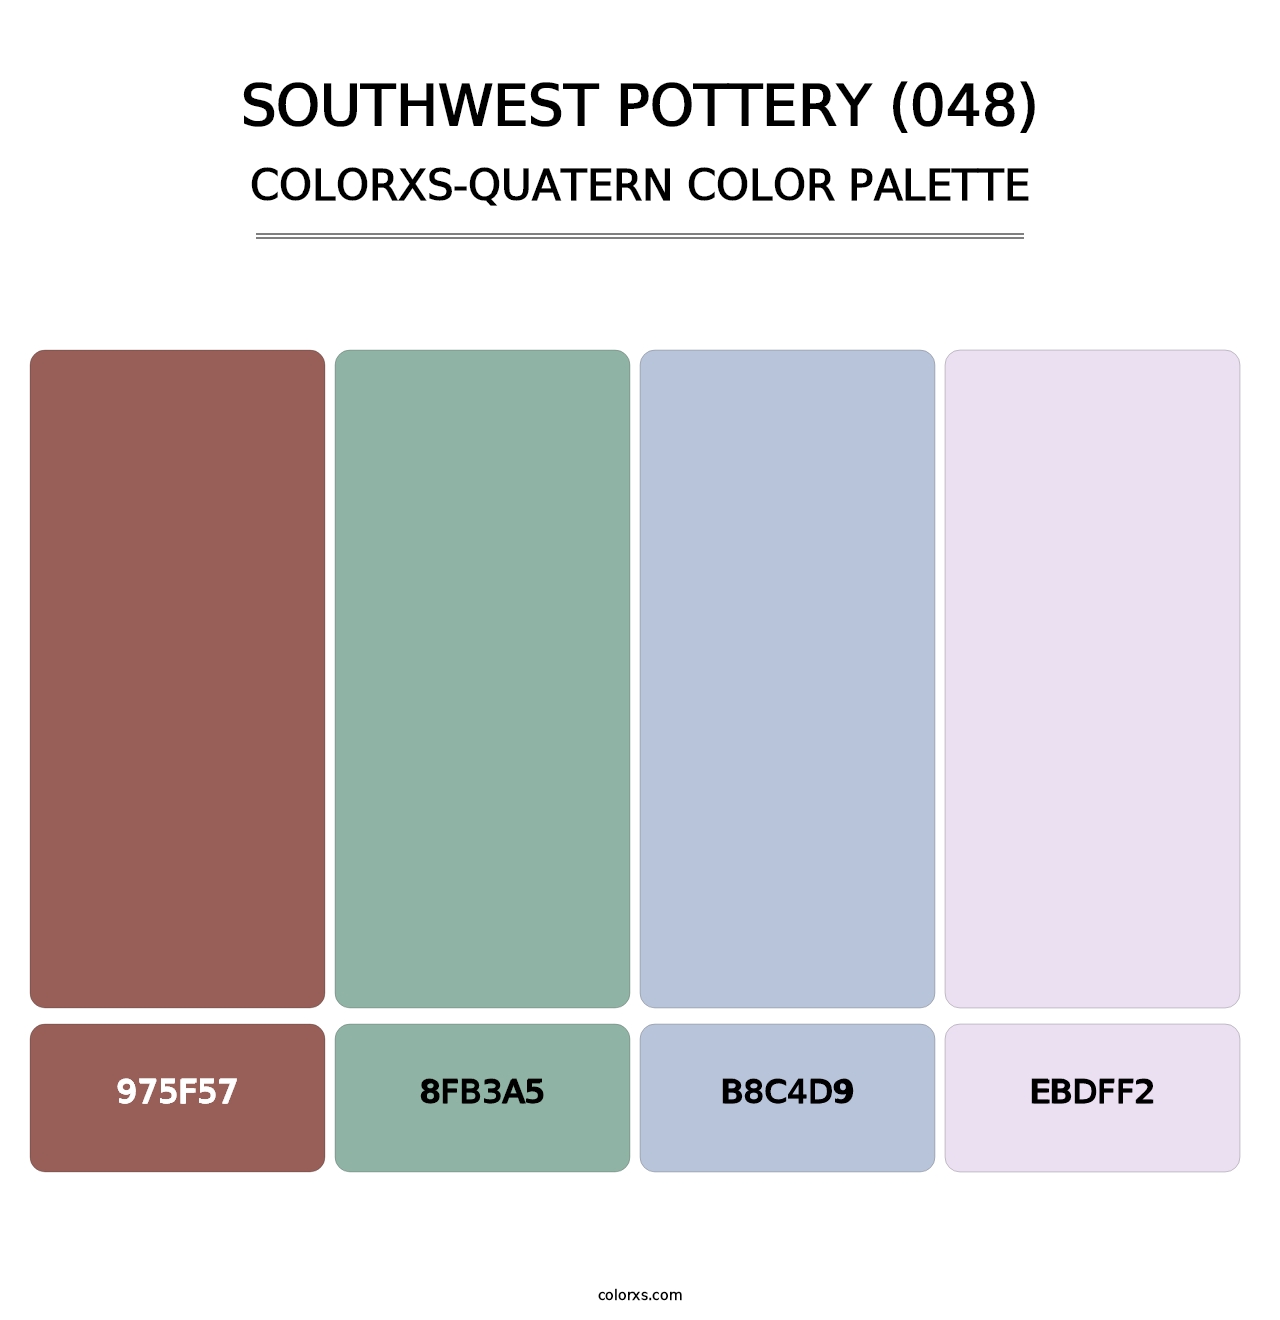 Southwest Pottery (048) - Colorxs Quatern Palette